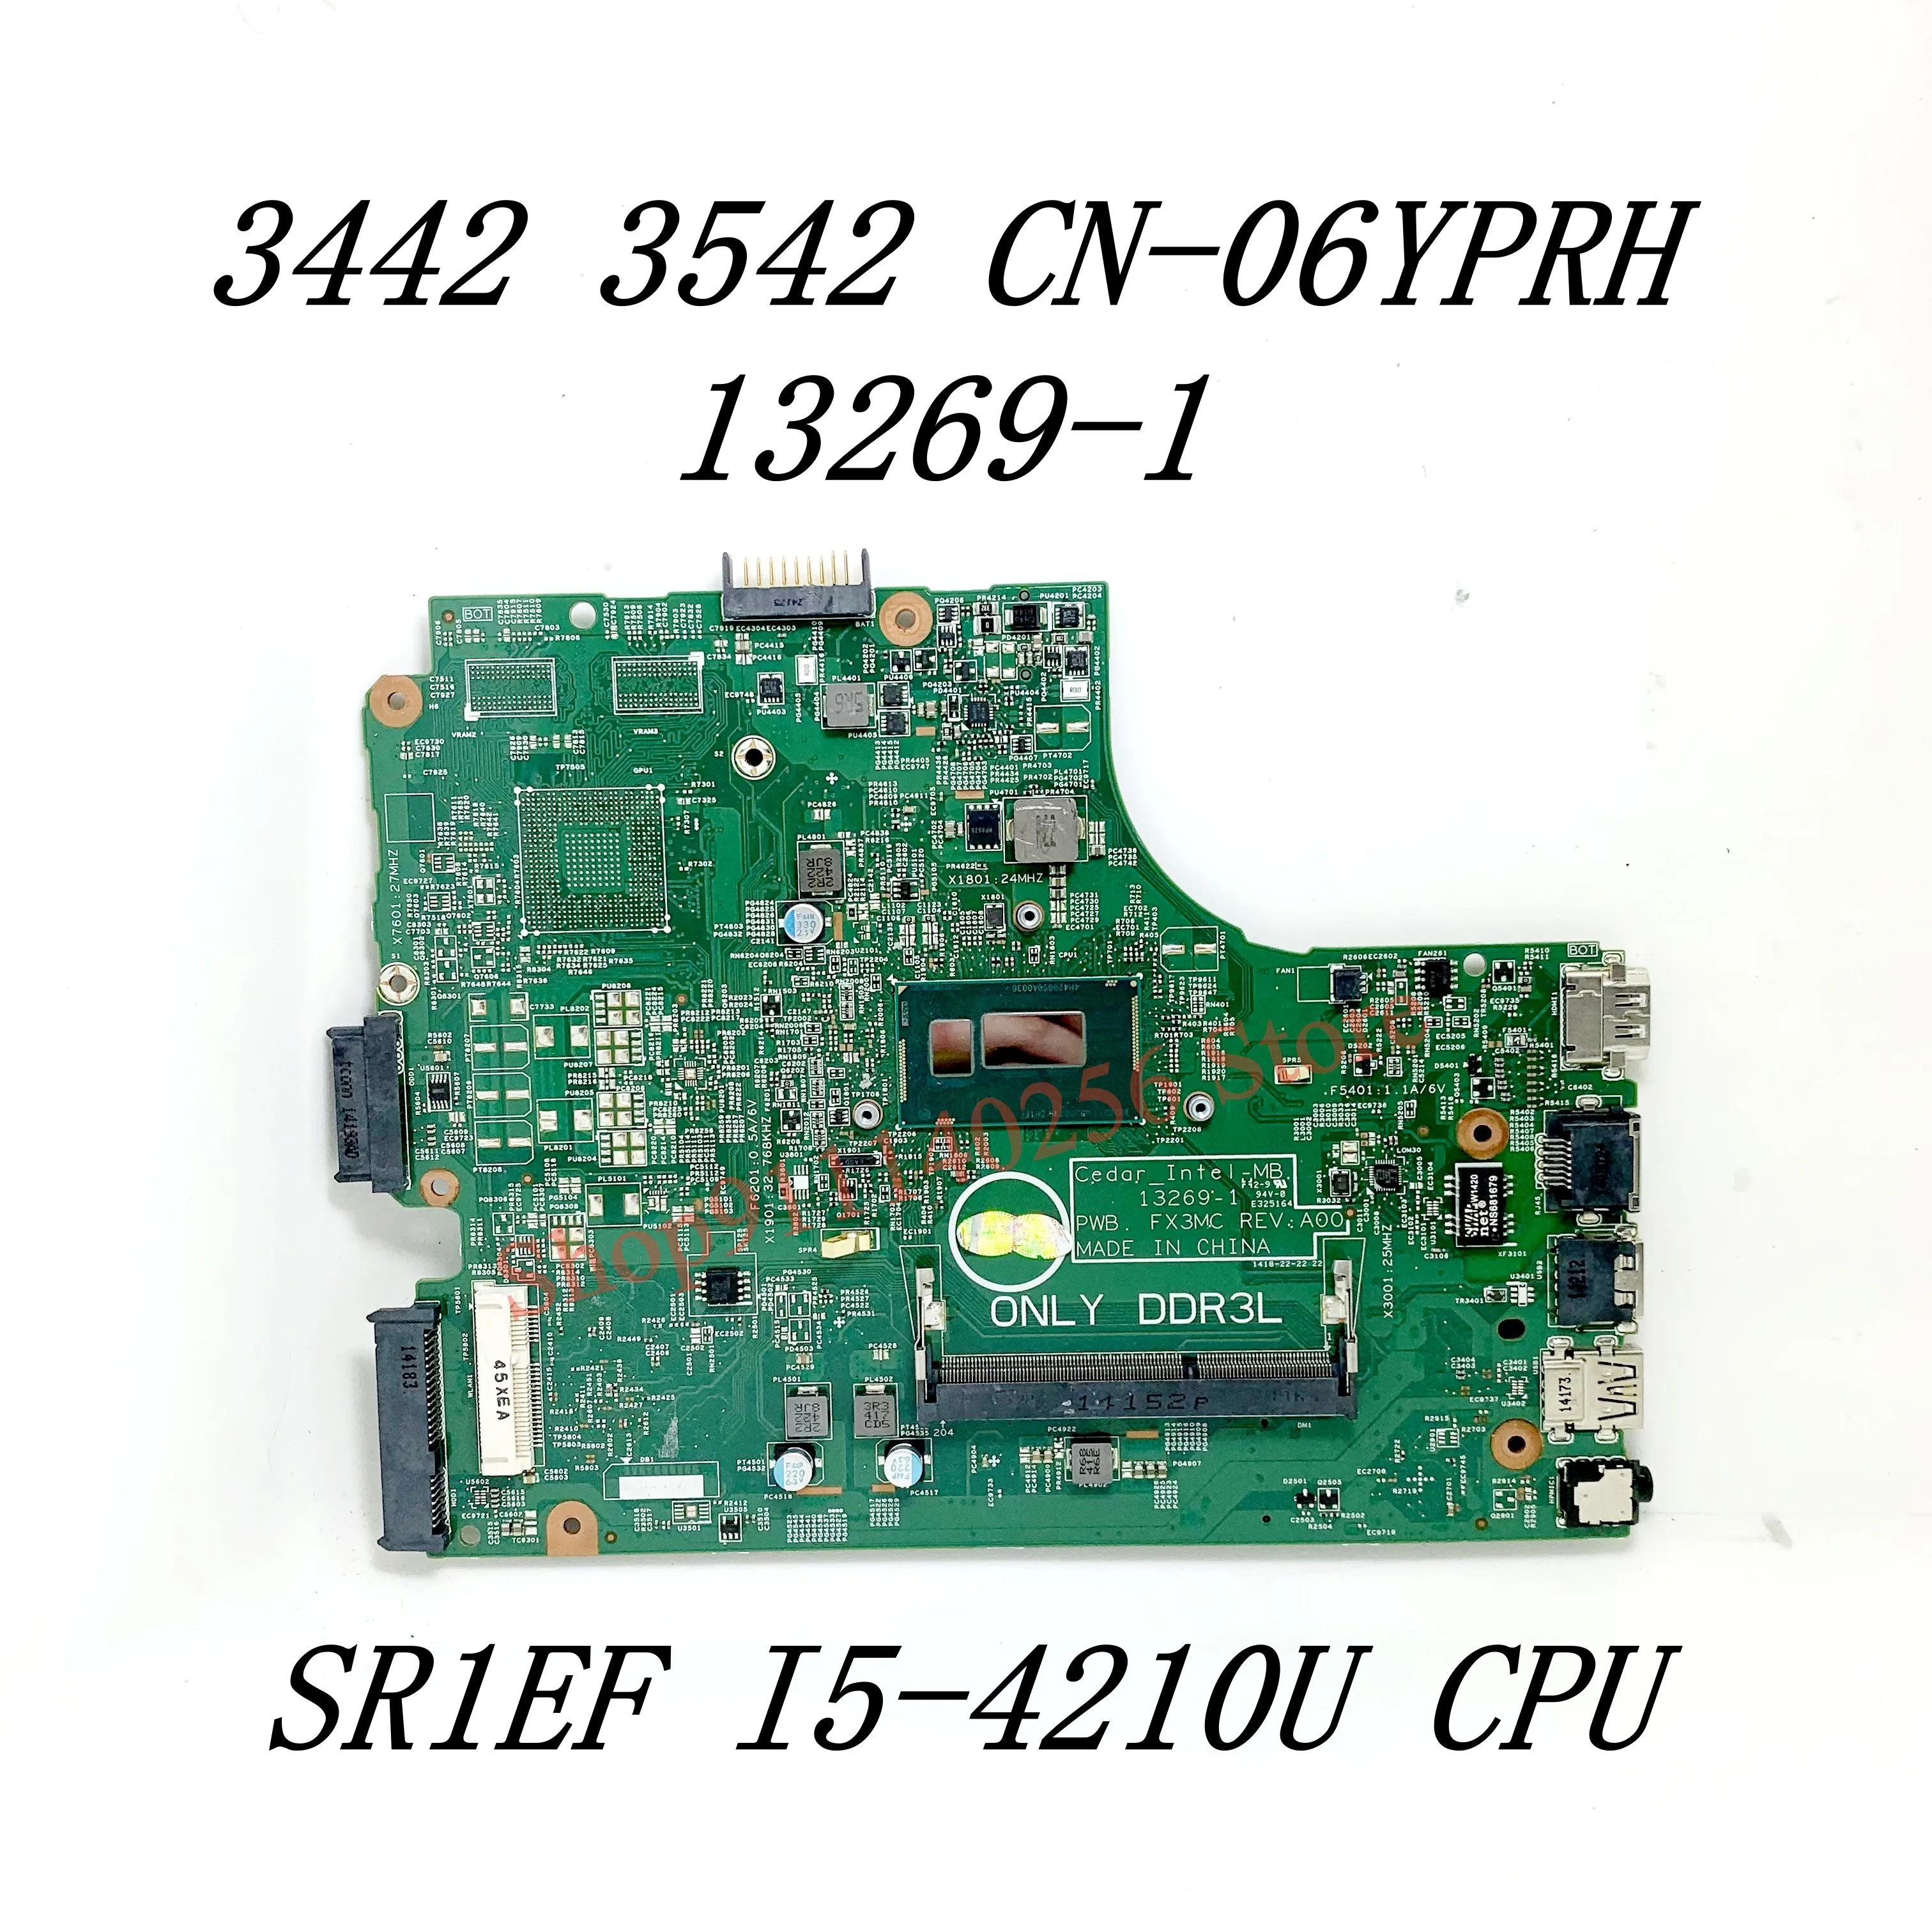 

Материнская плата CN-06YPRH 06YPRH 6yprh 0P8H6J с процессором SR1EF I5-4210U для Dell 3442 3542 5748, материнская плата для ноутбука 13269-1 100%, полностью протестирована